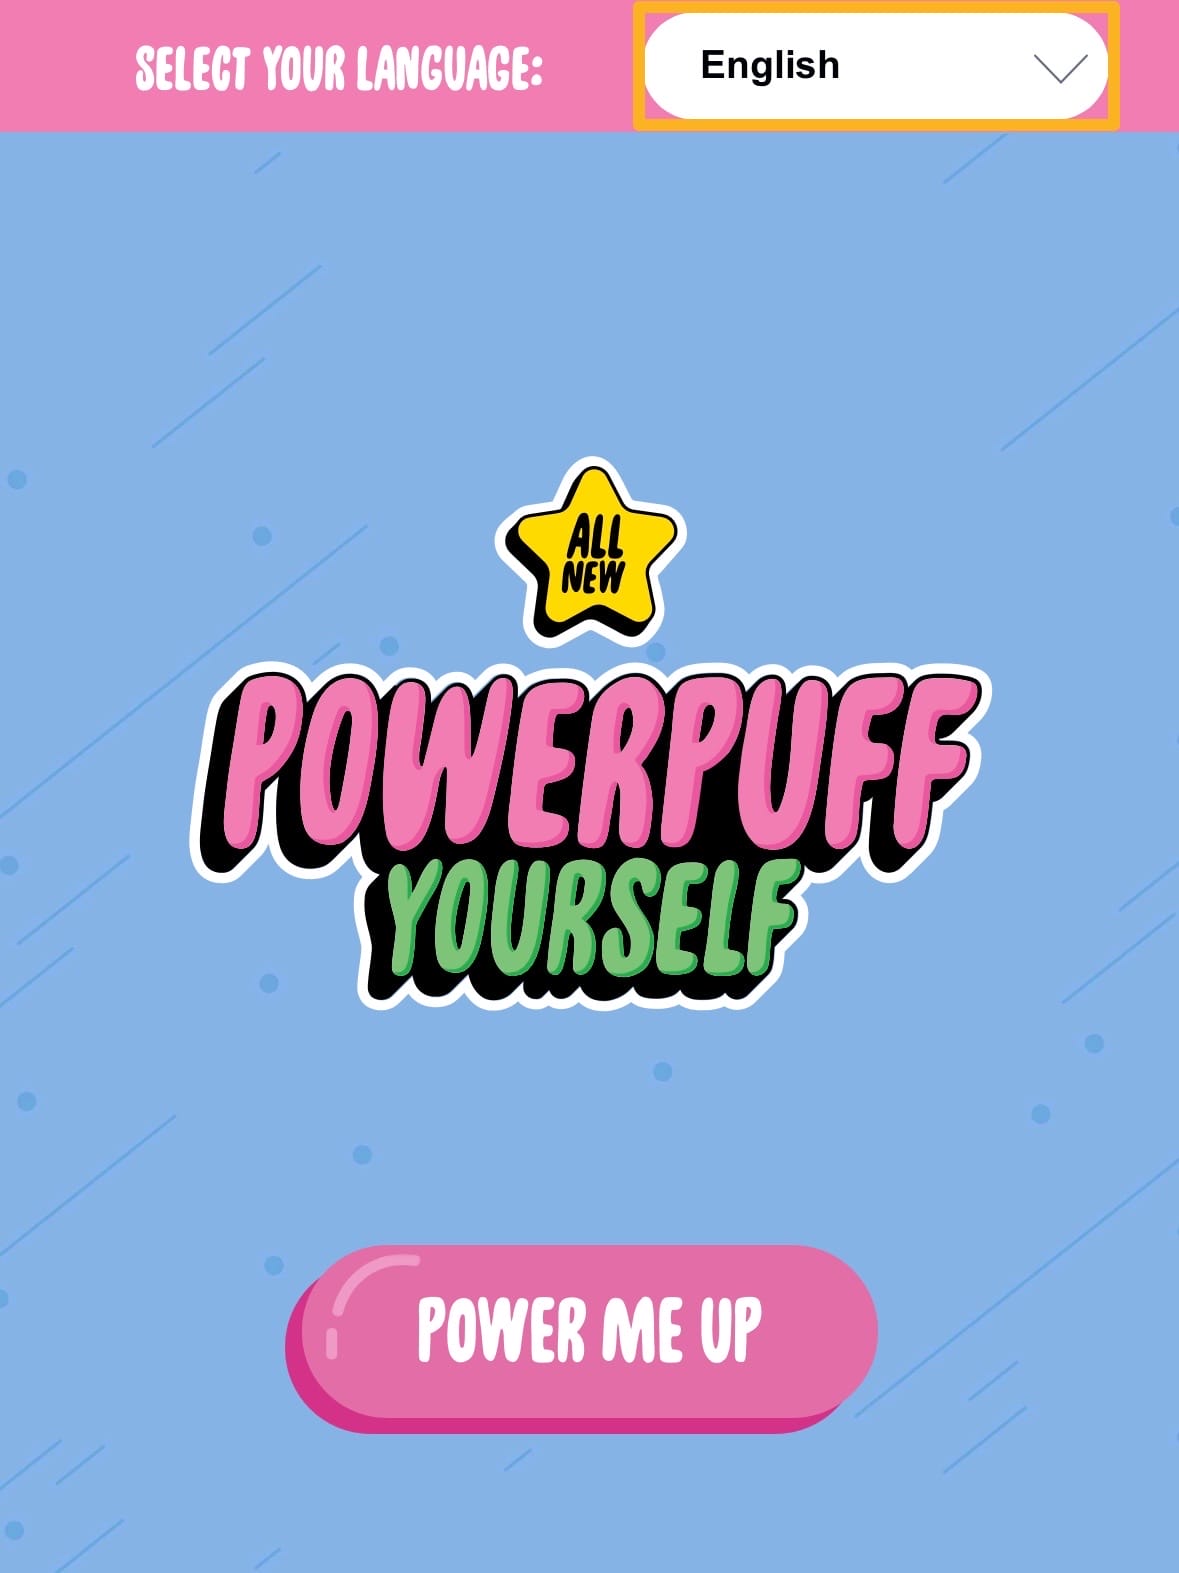 เว็บครีเอทคาแรคเตอร์ Powerpuff Girls ในฉบับของตัวเอง Powerpuff Yourself